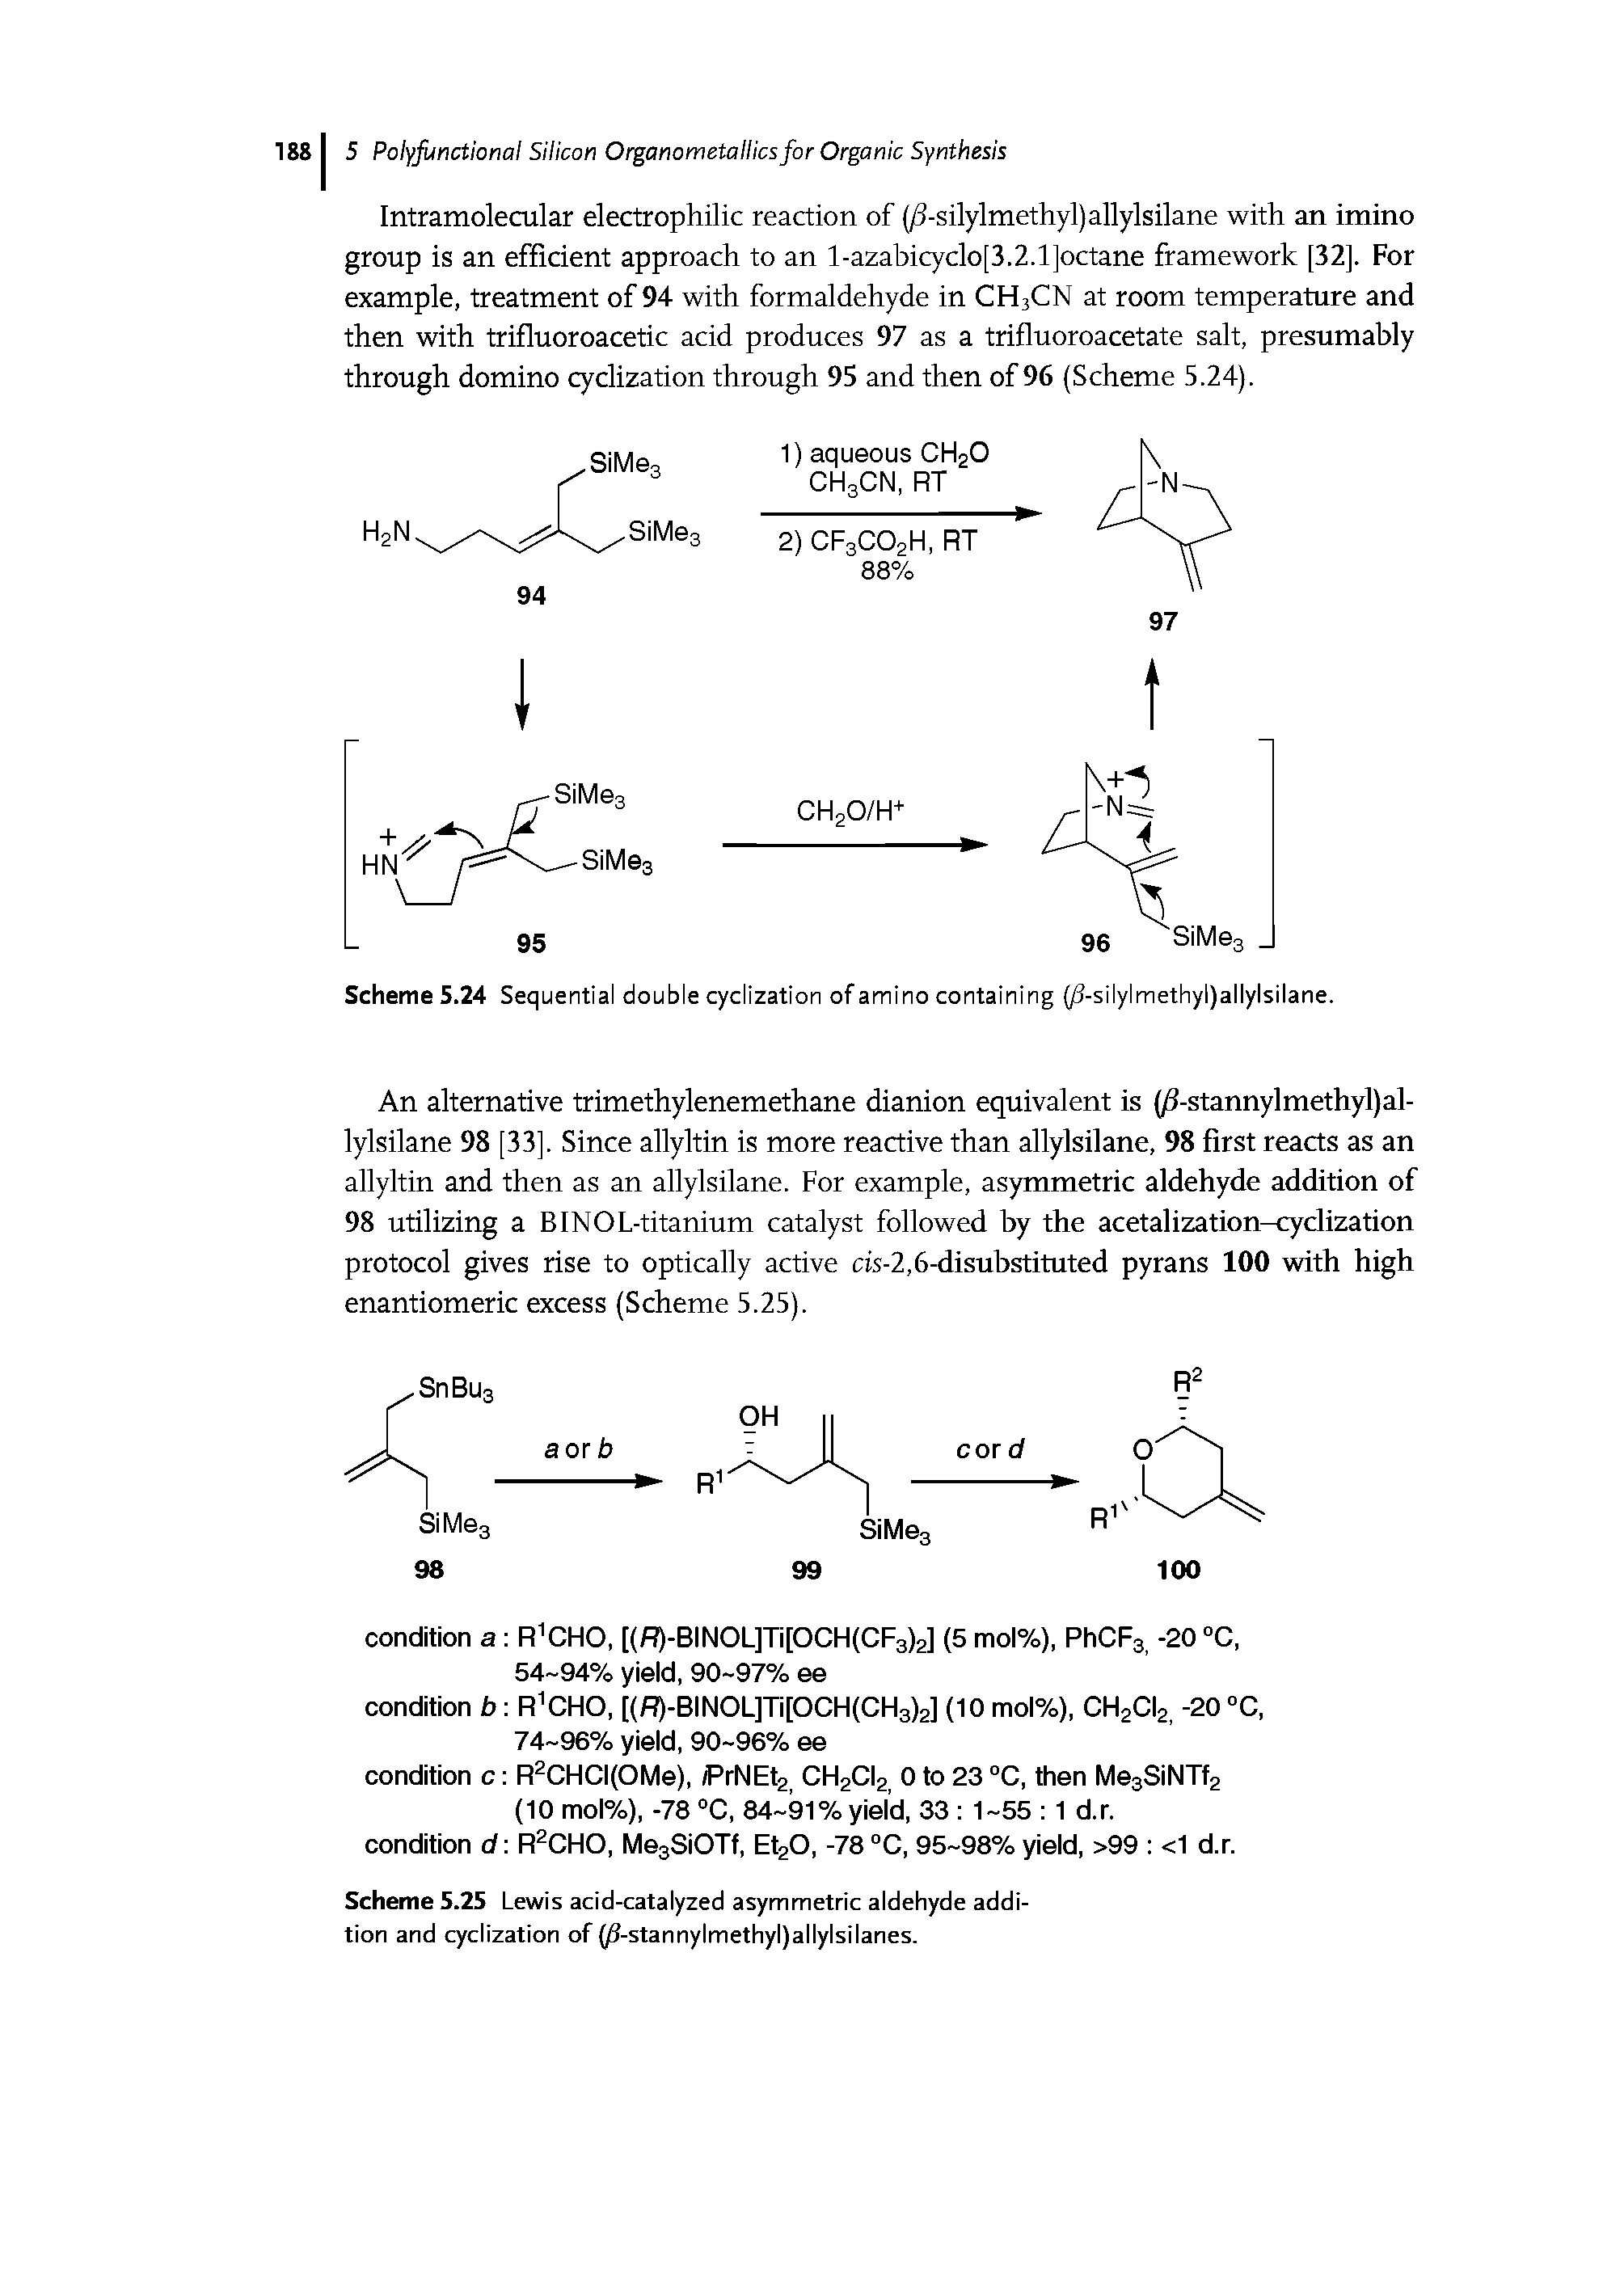 Scheme 5.25 Lewis acid-catalyzed asymmetric aldehyde addition and cydization of 08-stannylmethyl)allylsilanes.